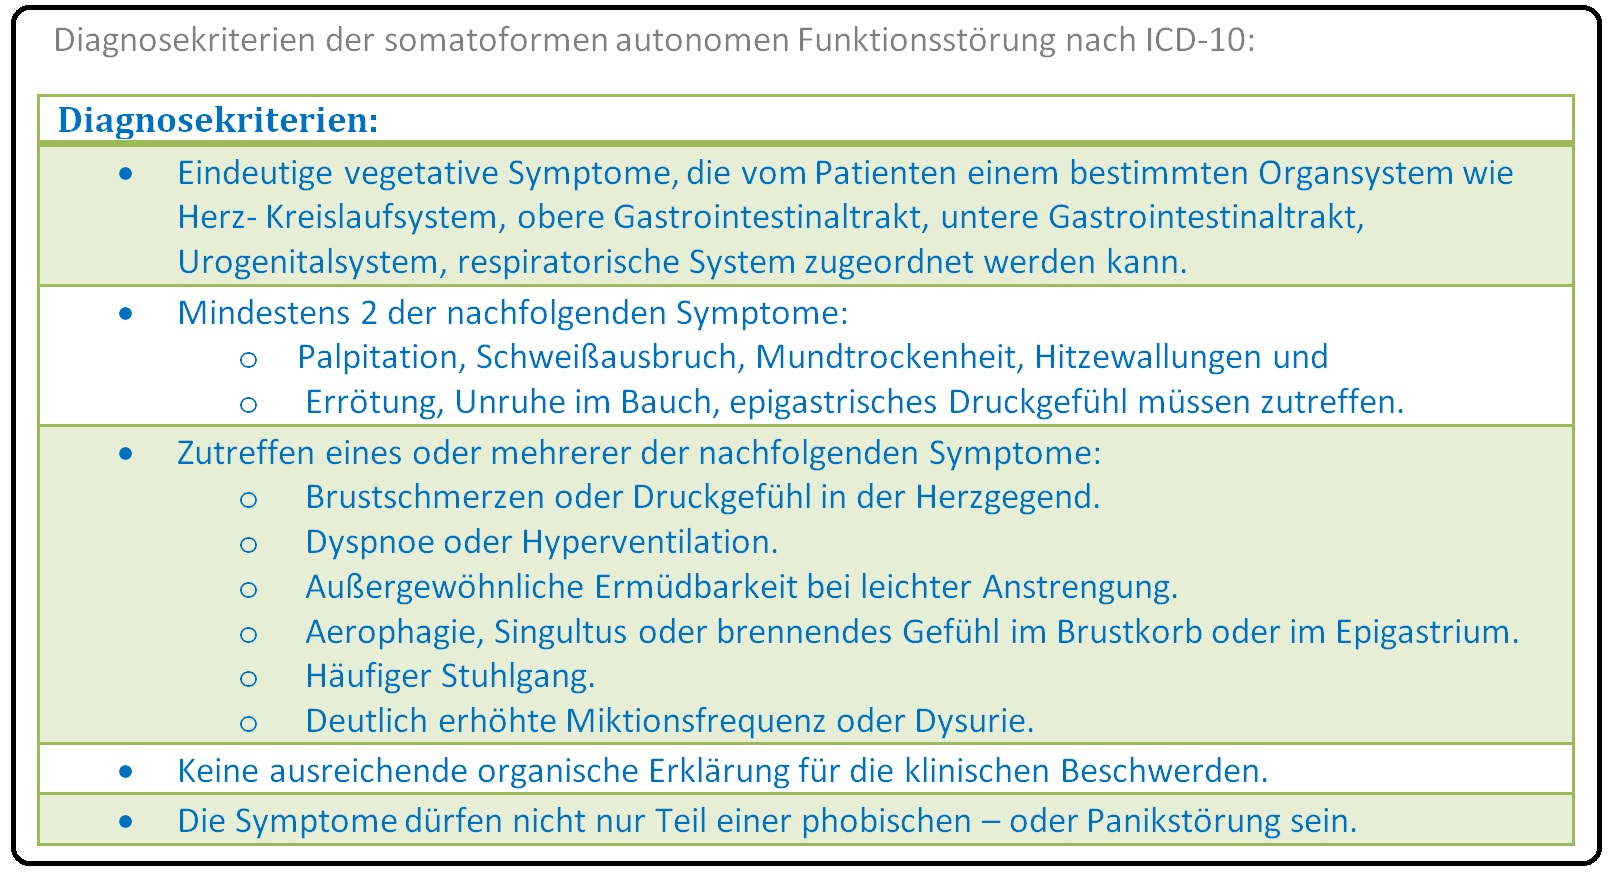 592 Diagnosekriterien der somatoformen autonomen Funktionsstörung nach ICD 10